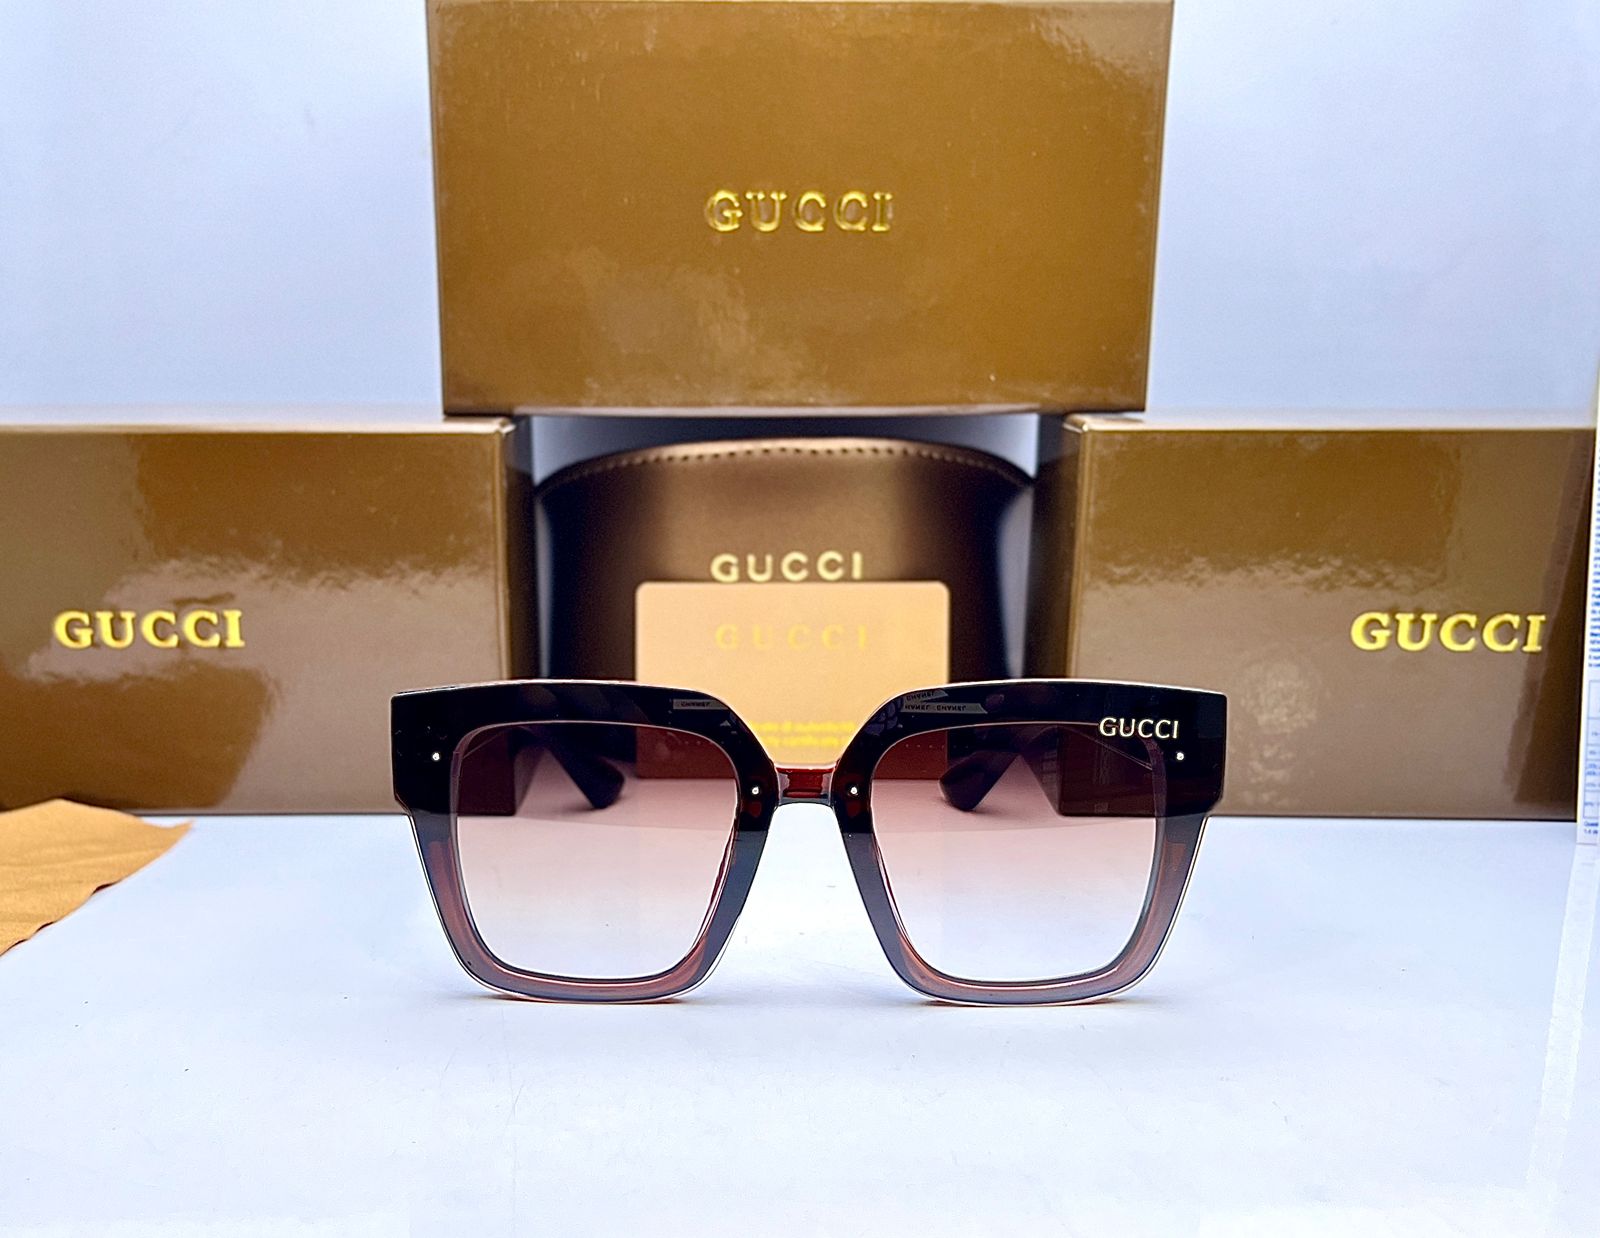 Gucci Sunglasses Price in Pakistan 